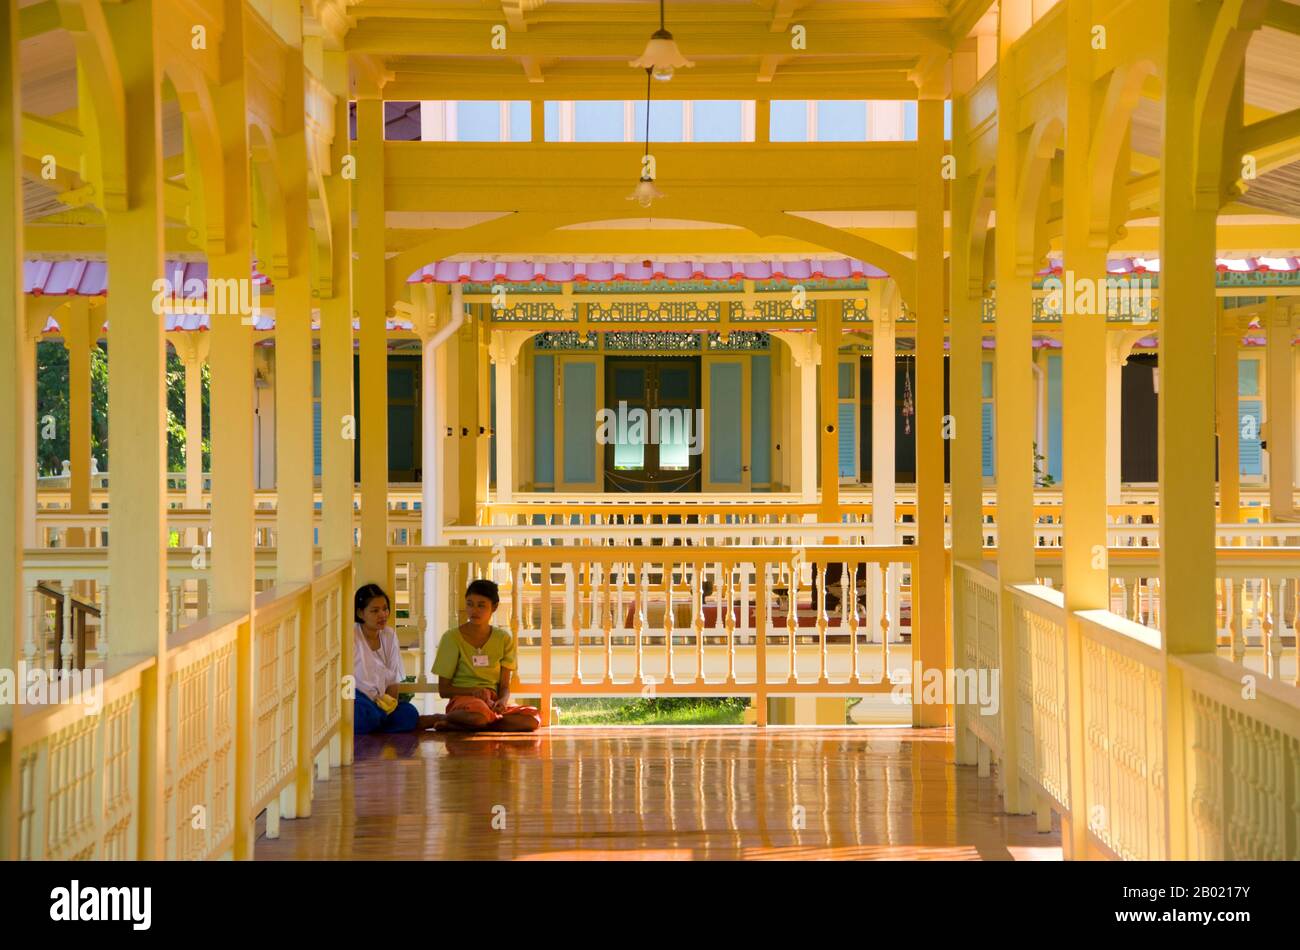 Il palazzo reale di Phra Ratchaniwet Marukhaitaiyawan fu la casa estiva di Rama VI (Re Vajiravudh, 1881 - 1925). Fu costruito nel 1923 in soli 16 giorni. Purtroppo il re morì due anni dopo e il palazzo fu abbandonato. Il Palazzo Marukhaitaiyawan, che significa "il Palazzo dell'Amore e Della Speranza", è stato progettato dall'architetto italiano Ercole Manfredi Foto Stock